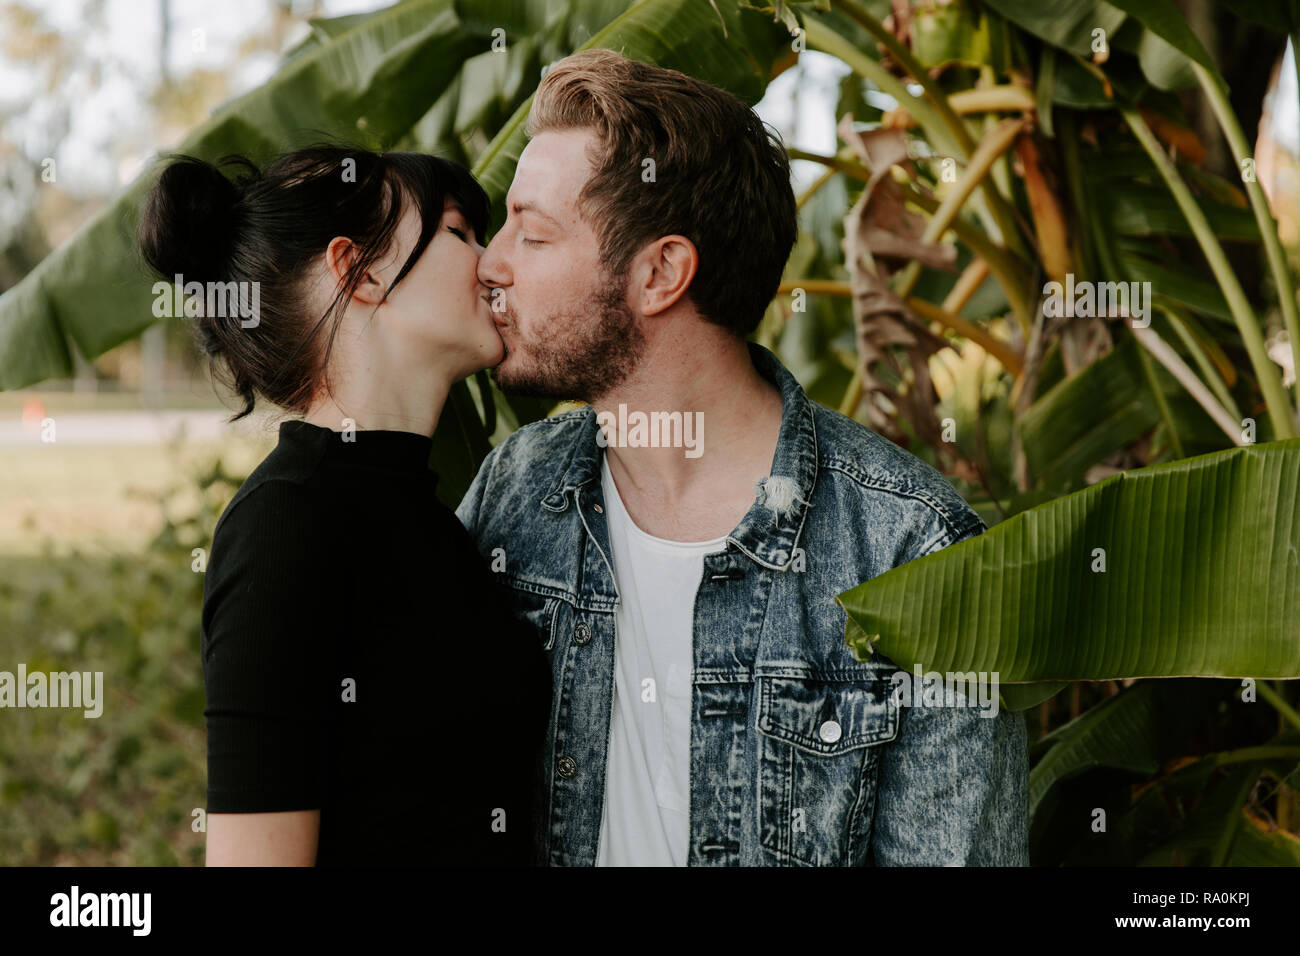 Ritratto di due simpatici caucasico moderno bella giovane adulto ragazzo fidanzato Lady ragazza giovane abbracciando e baciando in amore, Natura con piante verdi Foto Stock